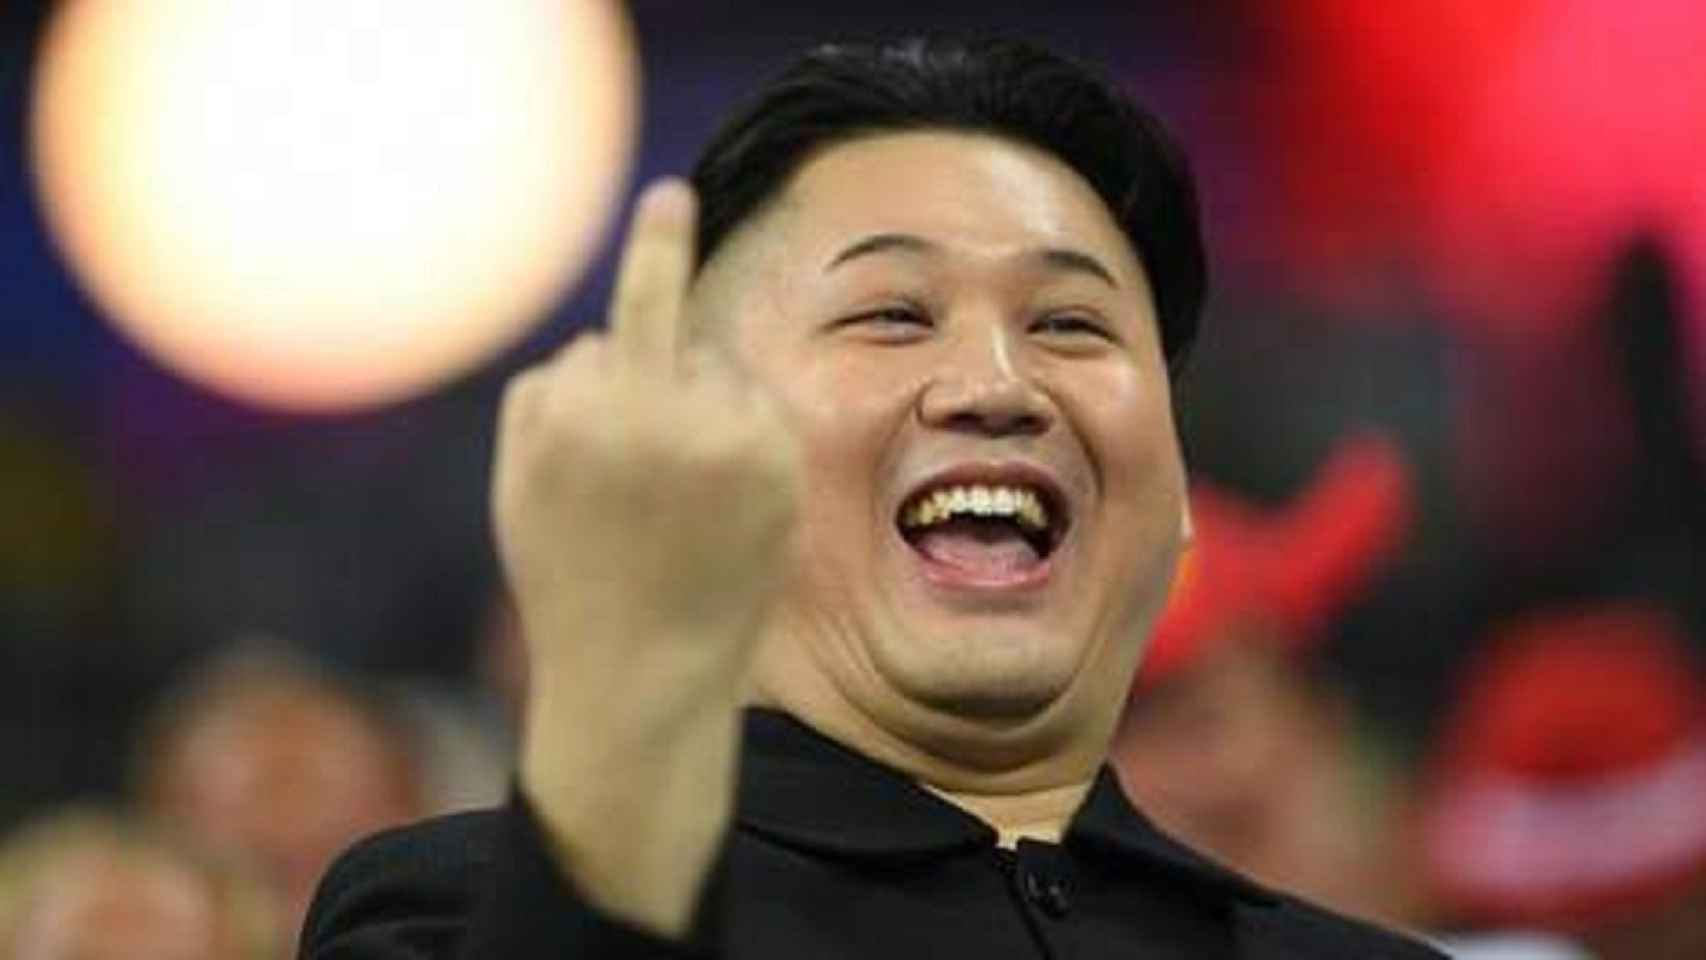 Kim Jong Un enseñando su dedo a un fotógrafo mientras vivía en EEUU.